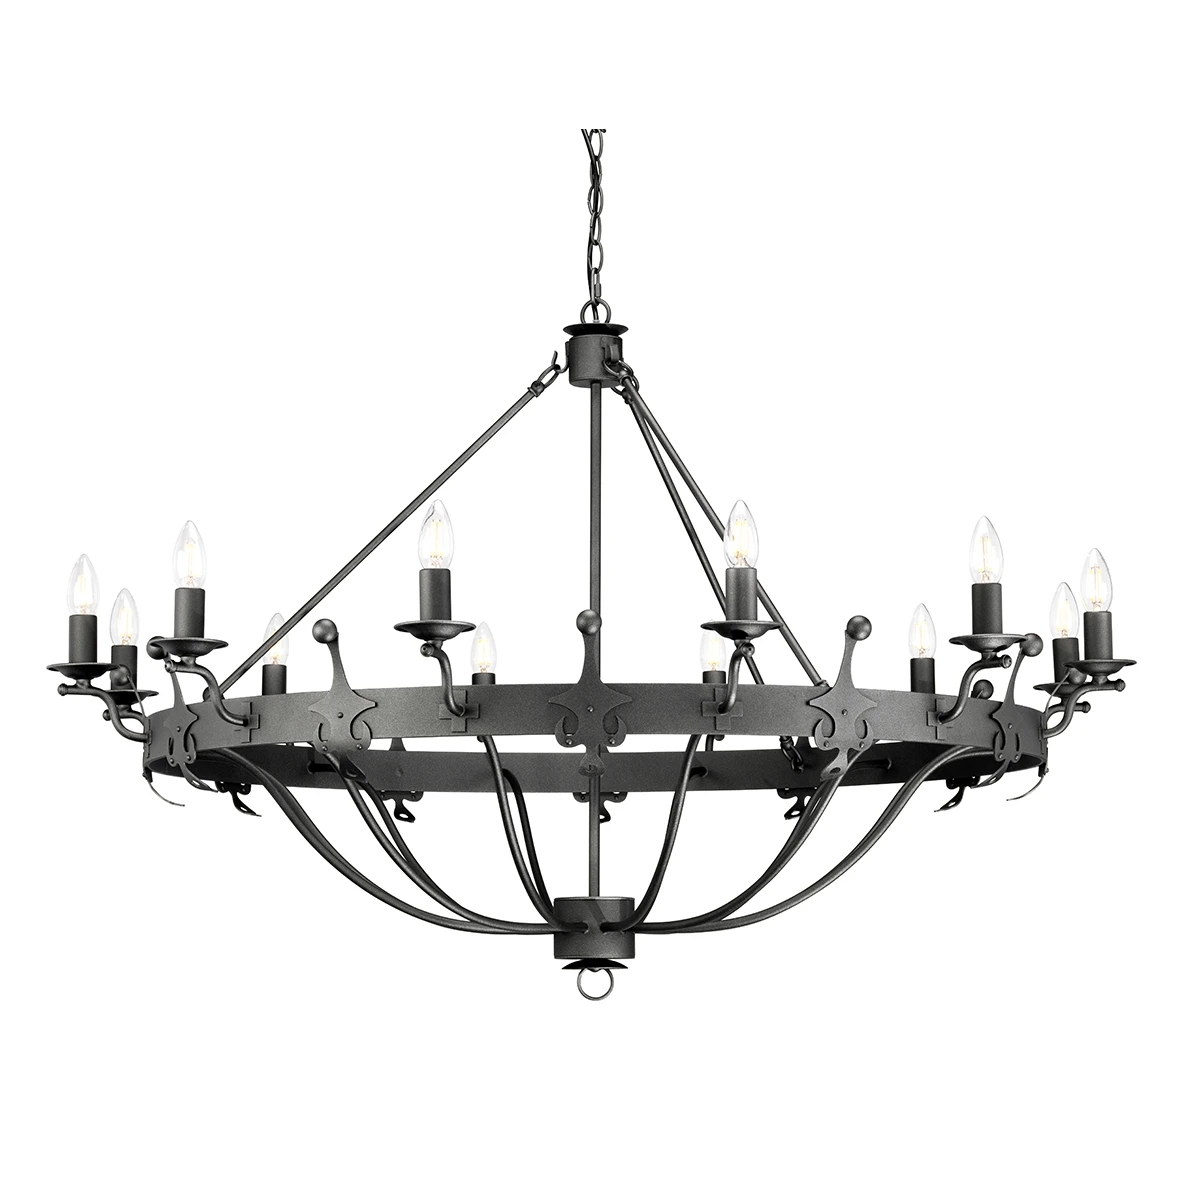 Hanging lamp Windsor WINDSOR12-GR